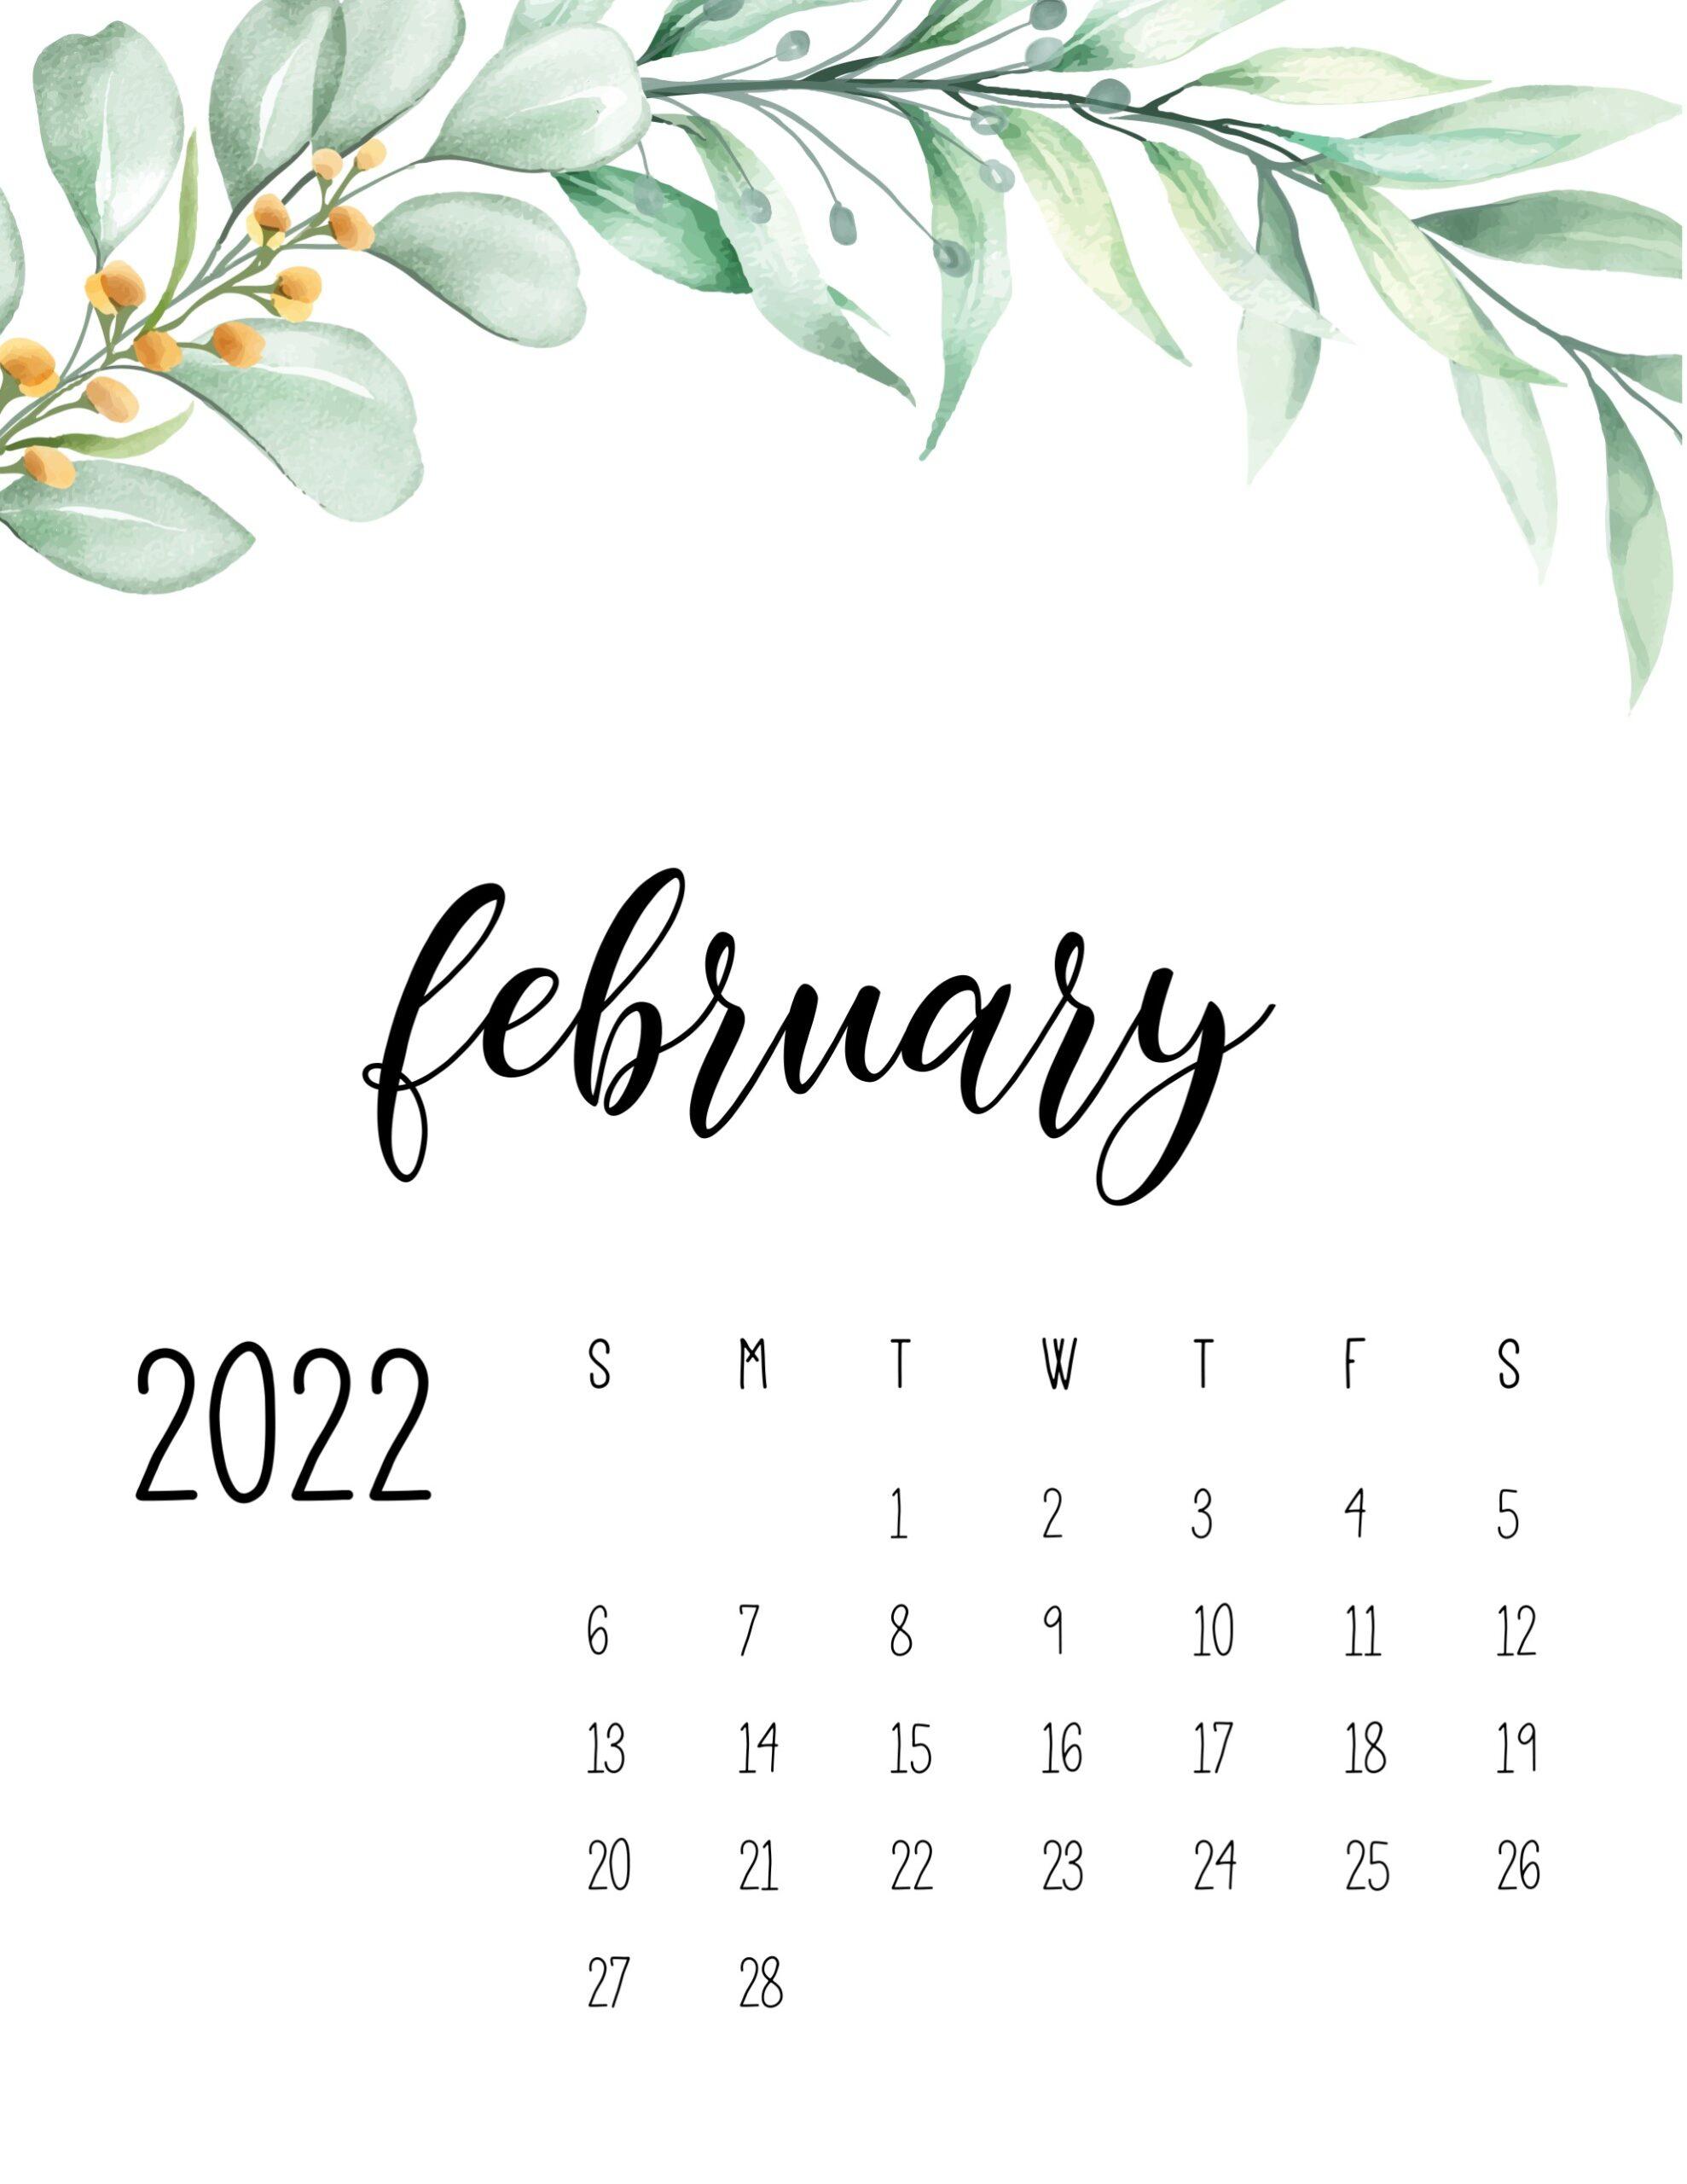 February 2022 Wallpaper Calendar February 2022 Calendar Wallpapers - Top Free February 2022 Calendar  Backgrounds - Wallpaperaccess